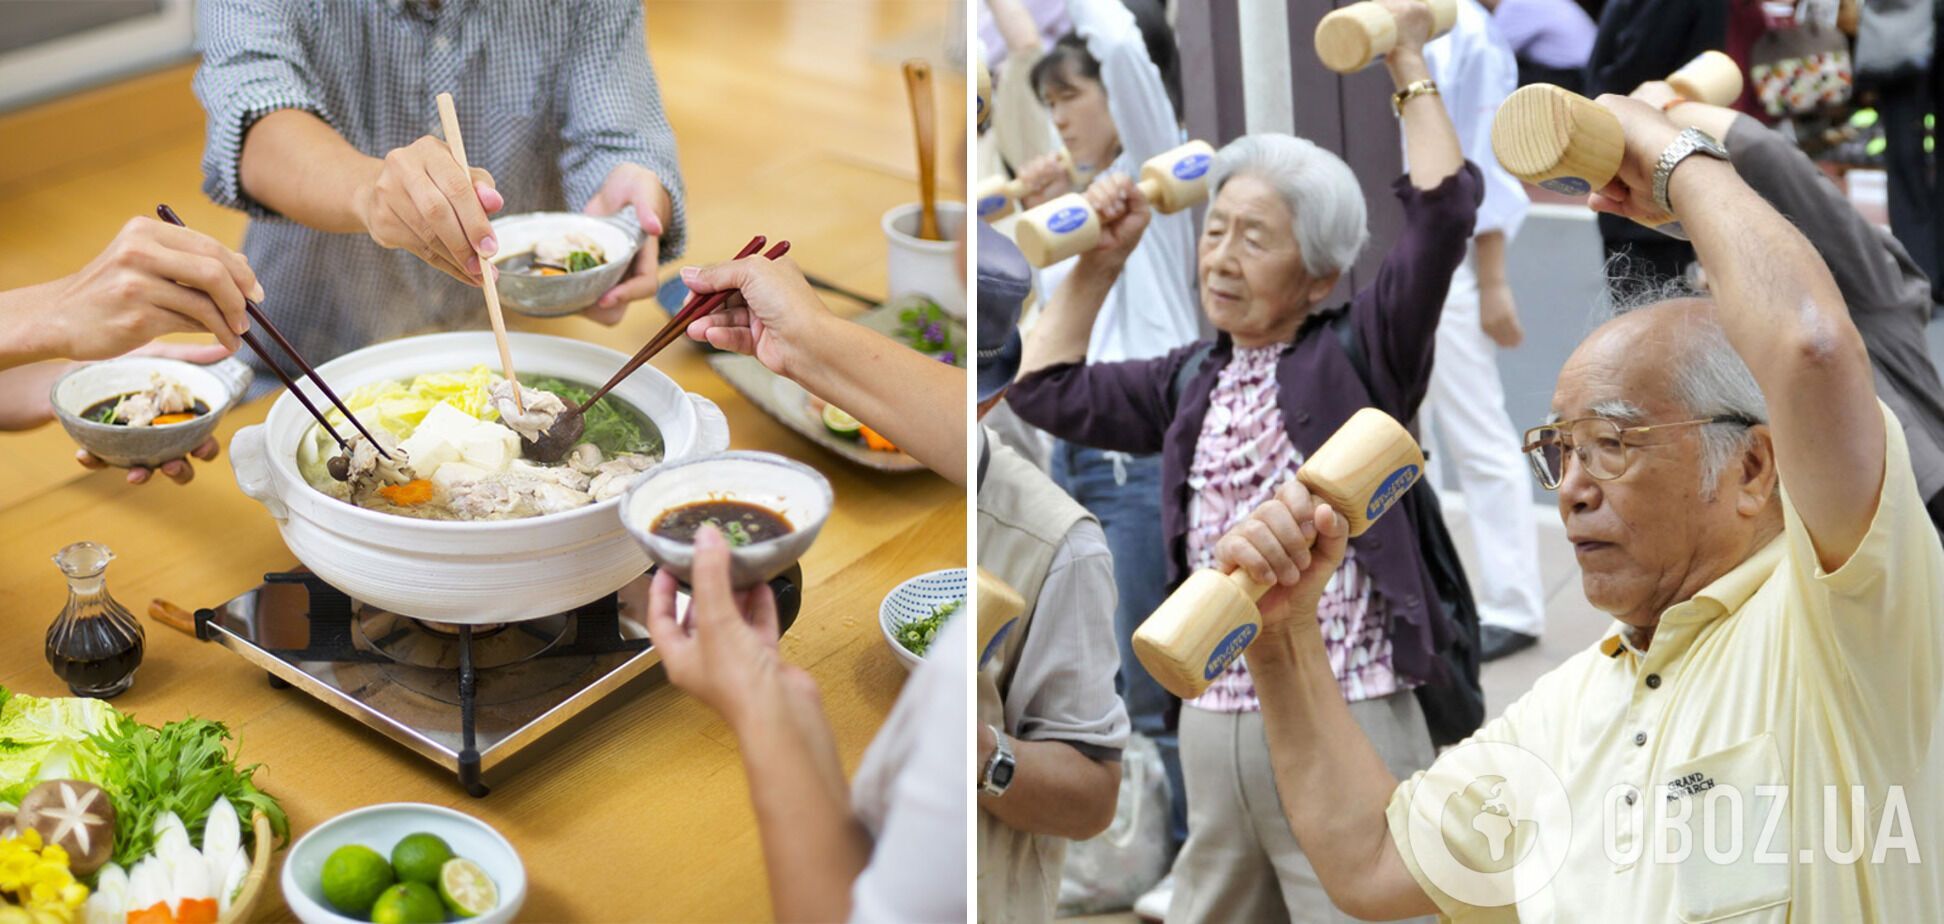 Даже в старости многие японцы ведут активный образ жизни.